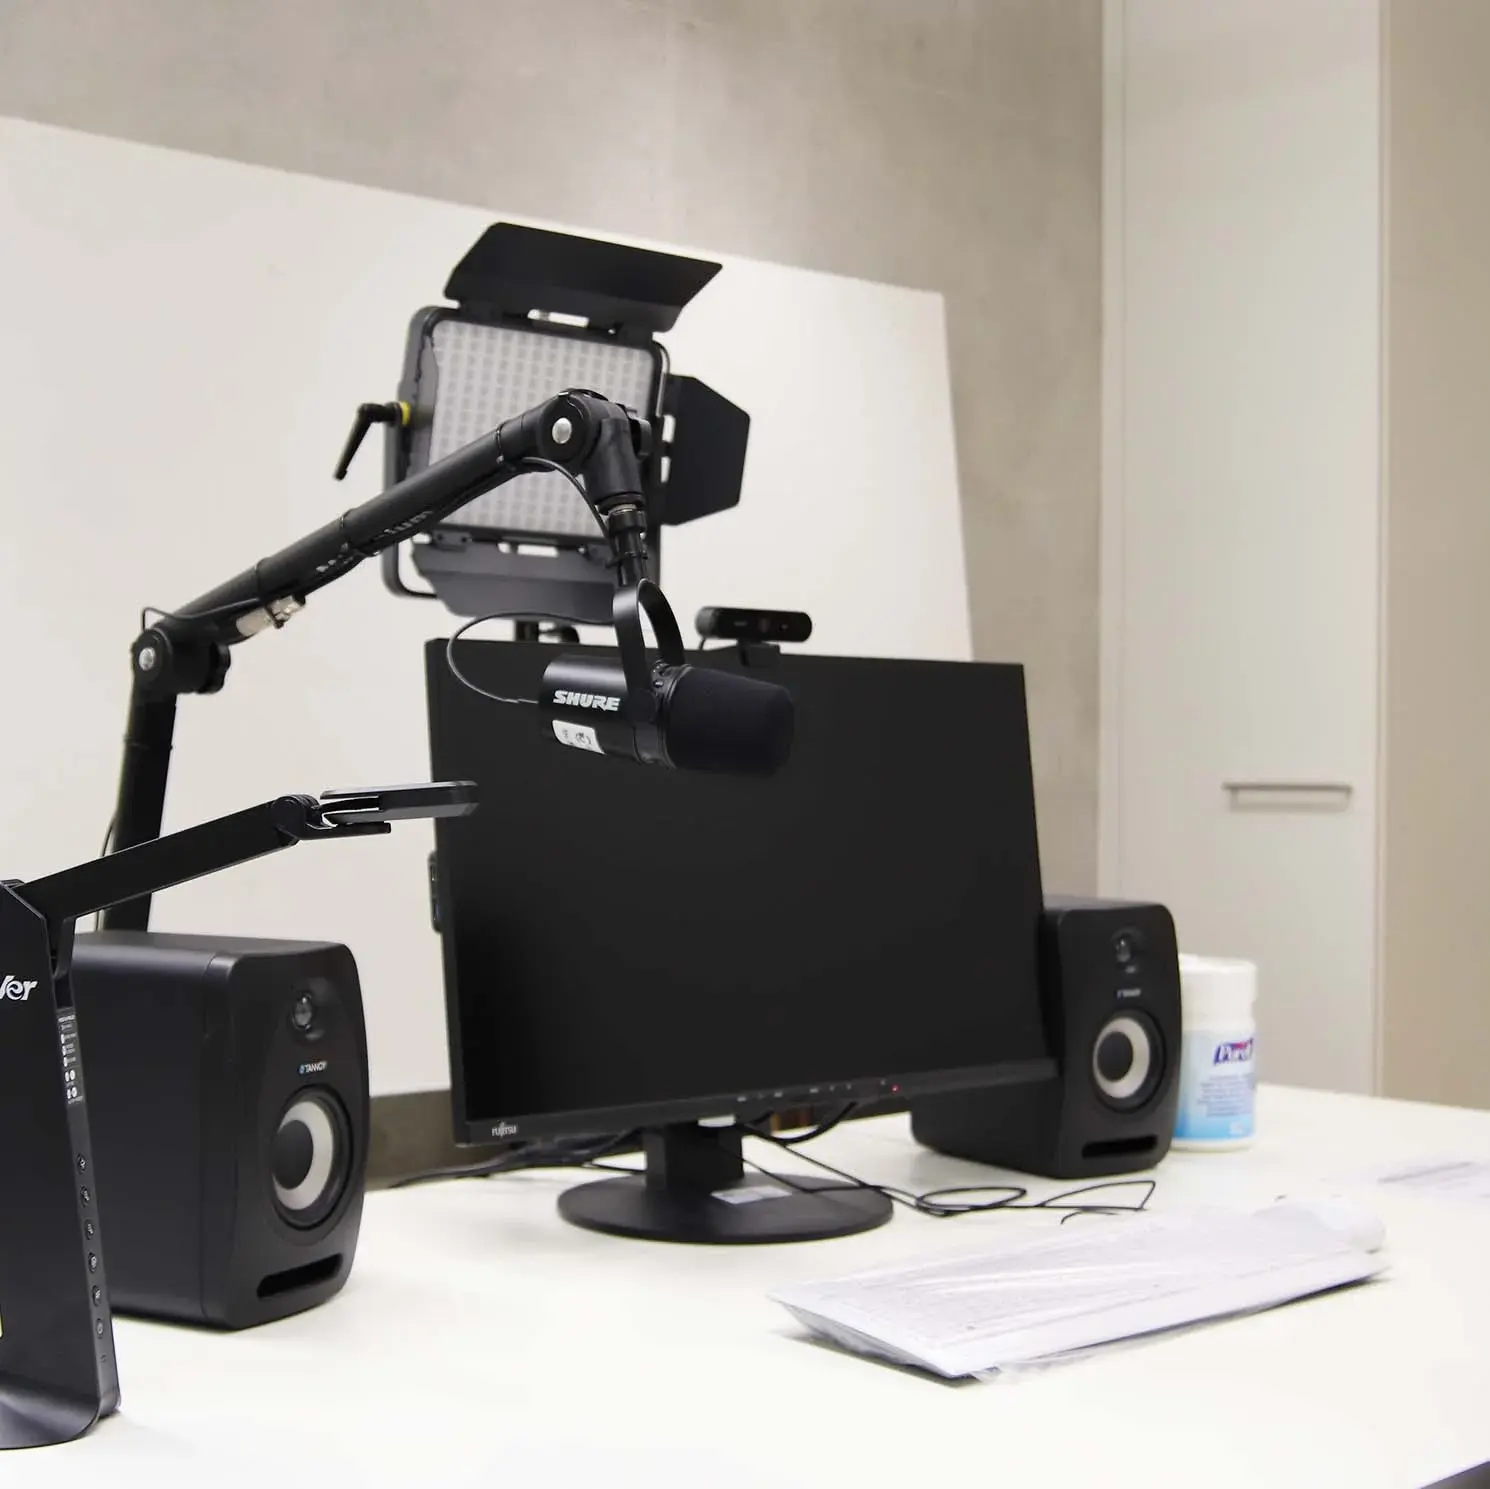 Arbeitsplatz im Medienproduktionsraum des eduroom - Werkstatt für Medienbildung (Computer, Webcam, Mikrofon, Visualizer, Lautsprecher, Headsets)